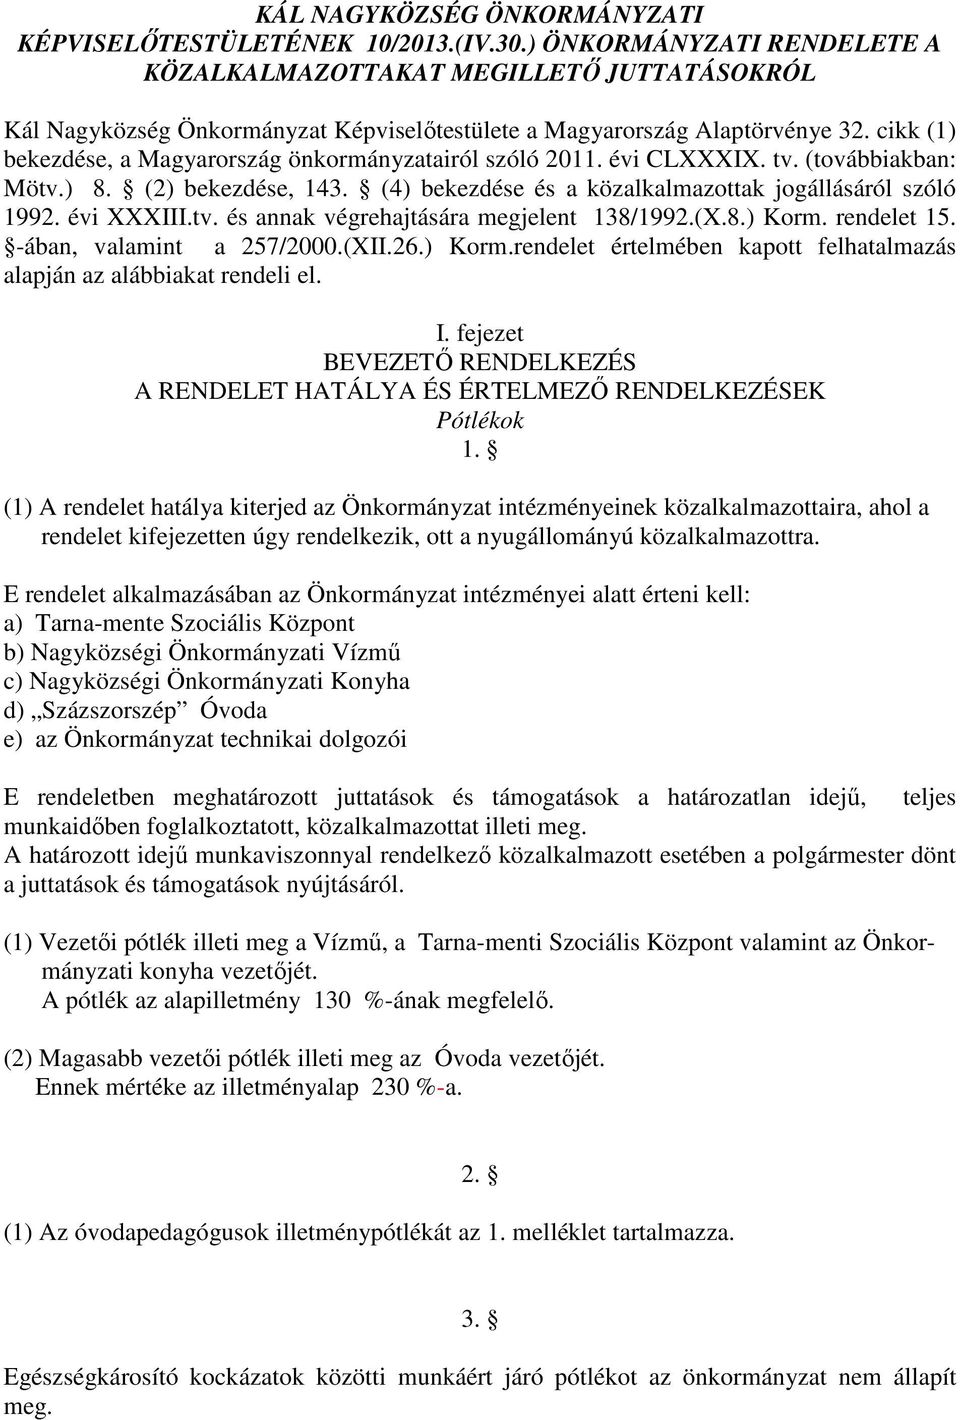 cikk (1) bekezdése, a Magyarország önkormányzatairól szóló 2011. évi CLXXXIX. tv. (továbbiakban: Mötv.) 8. (2) bekezdése, 143. (4) bekezdése és a közalkalmazottak jogállásáról szóló 1992. évi XXXIII.